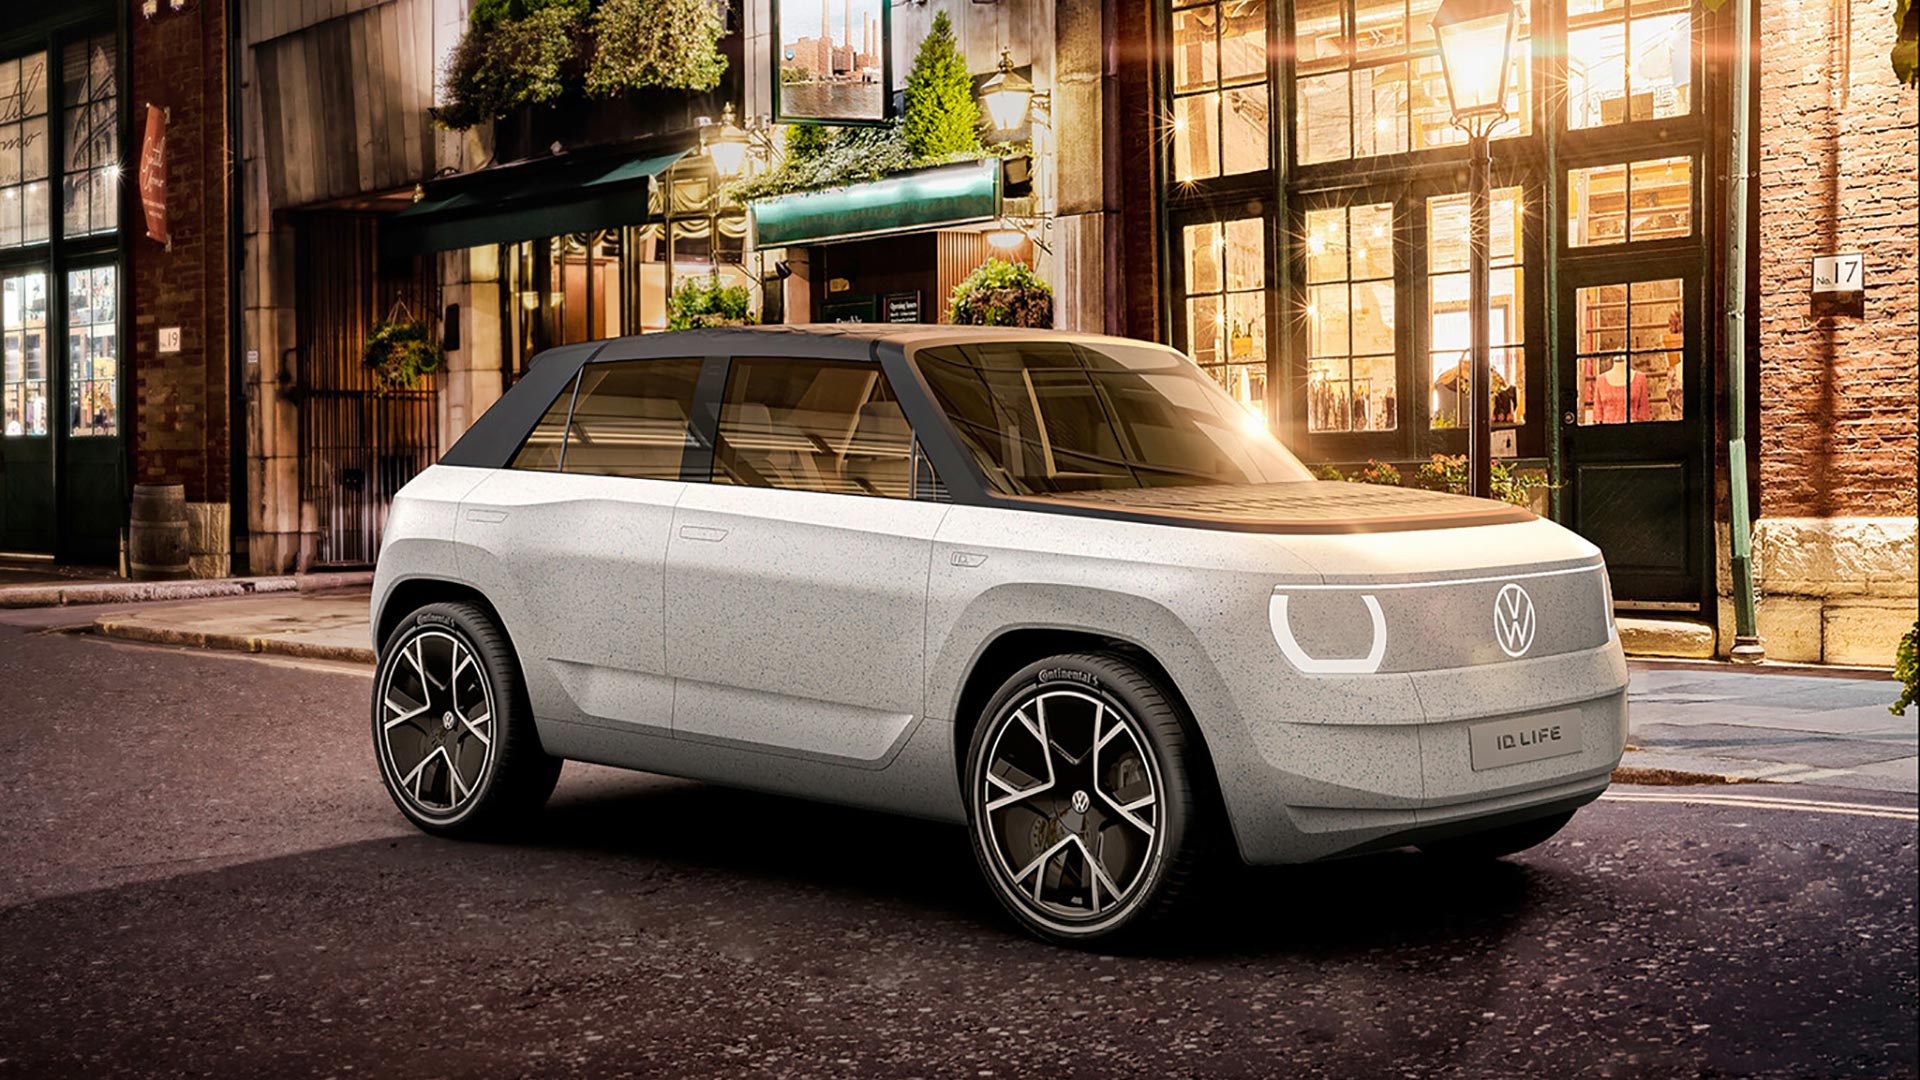 Las formas del VW ID Life no tienen grandes innovaciones, pero su aspecto de todos modos es futurista a partir del minimalismo de su concepto